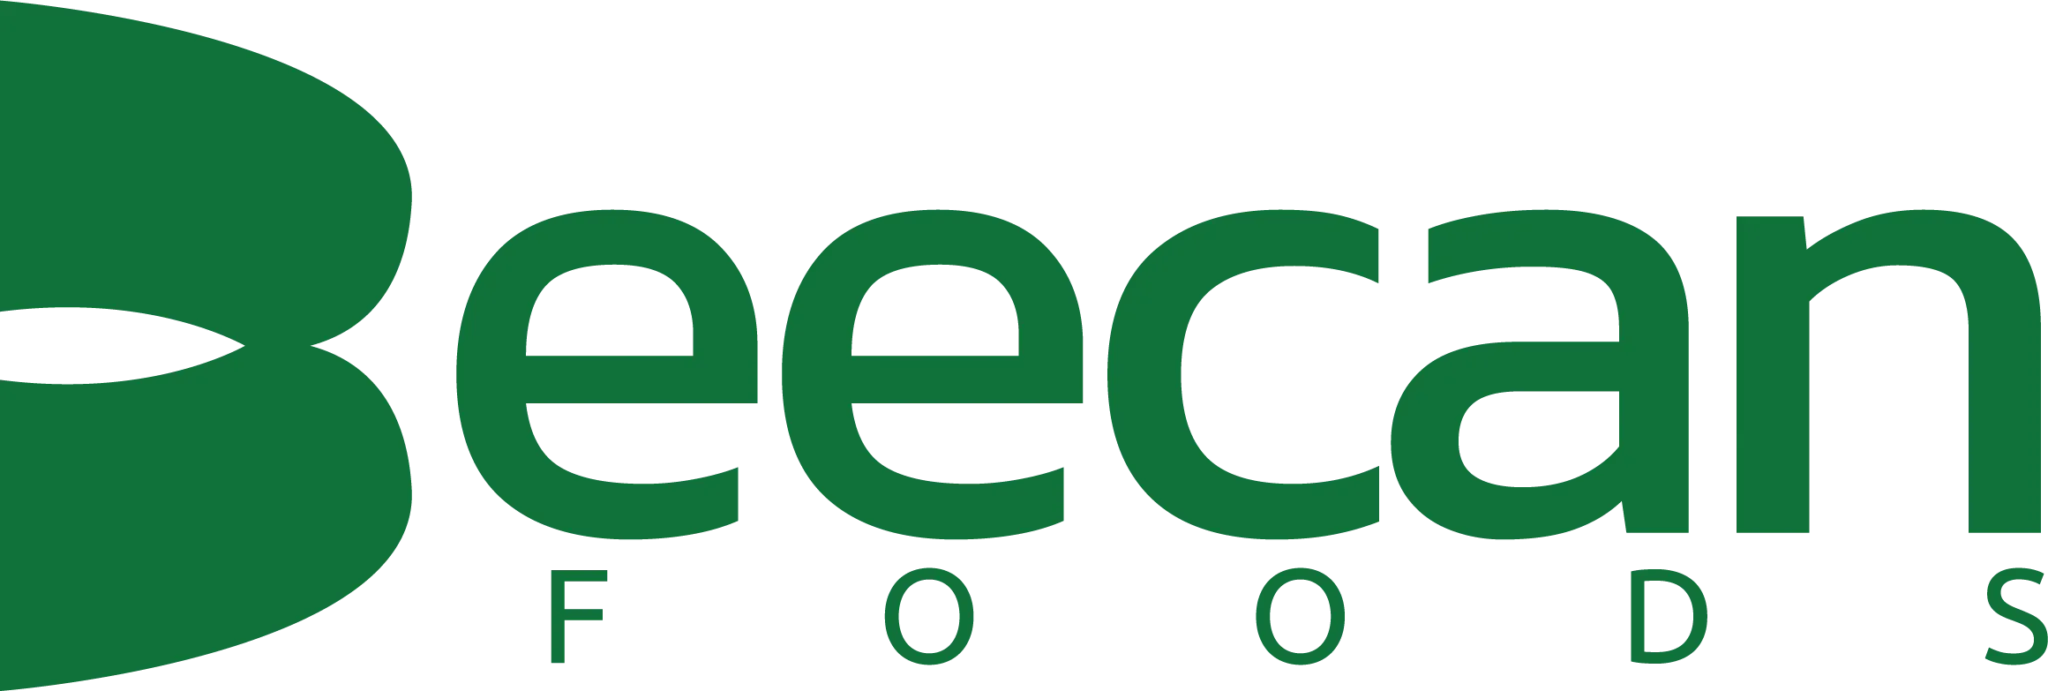 beecan logo